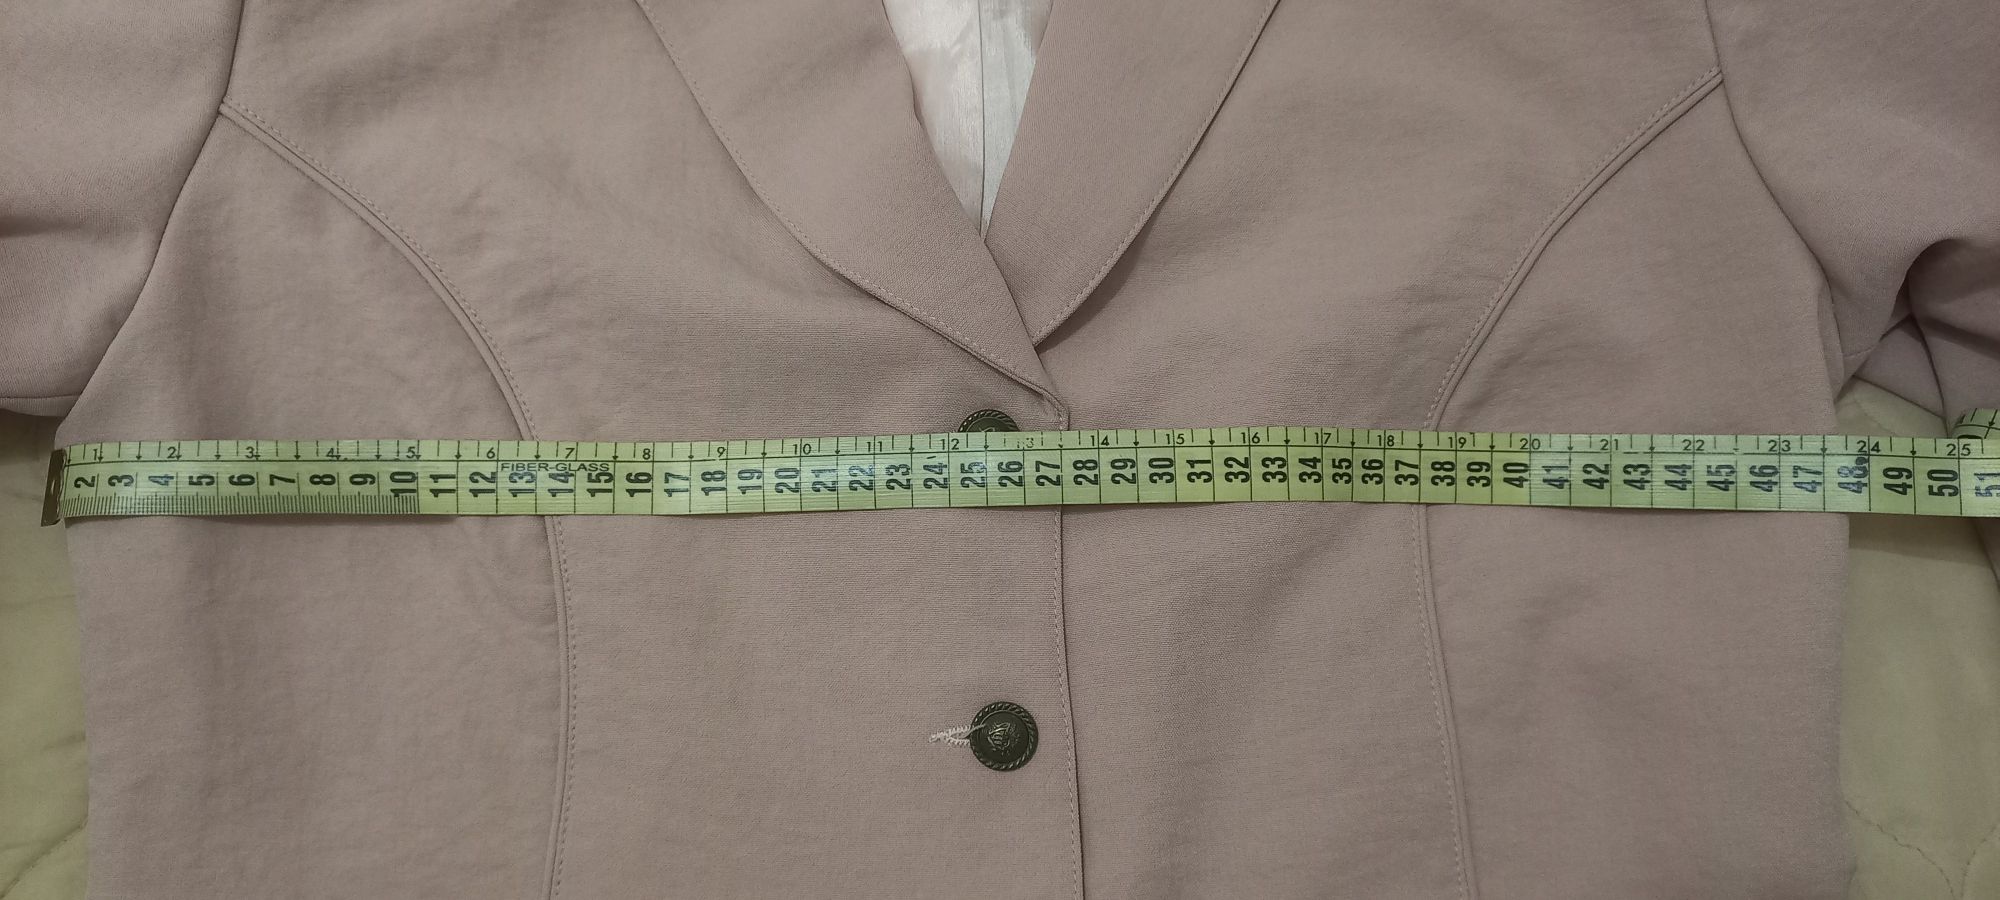 Комплект двойка (блузка и пиджак) с замерами.